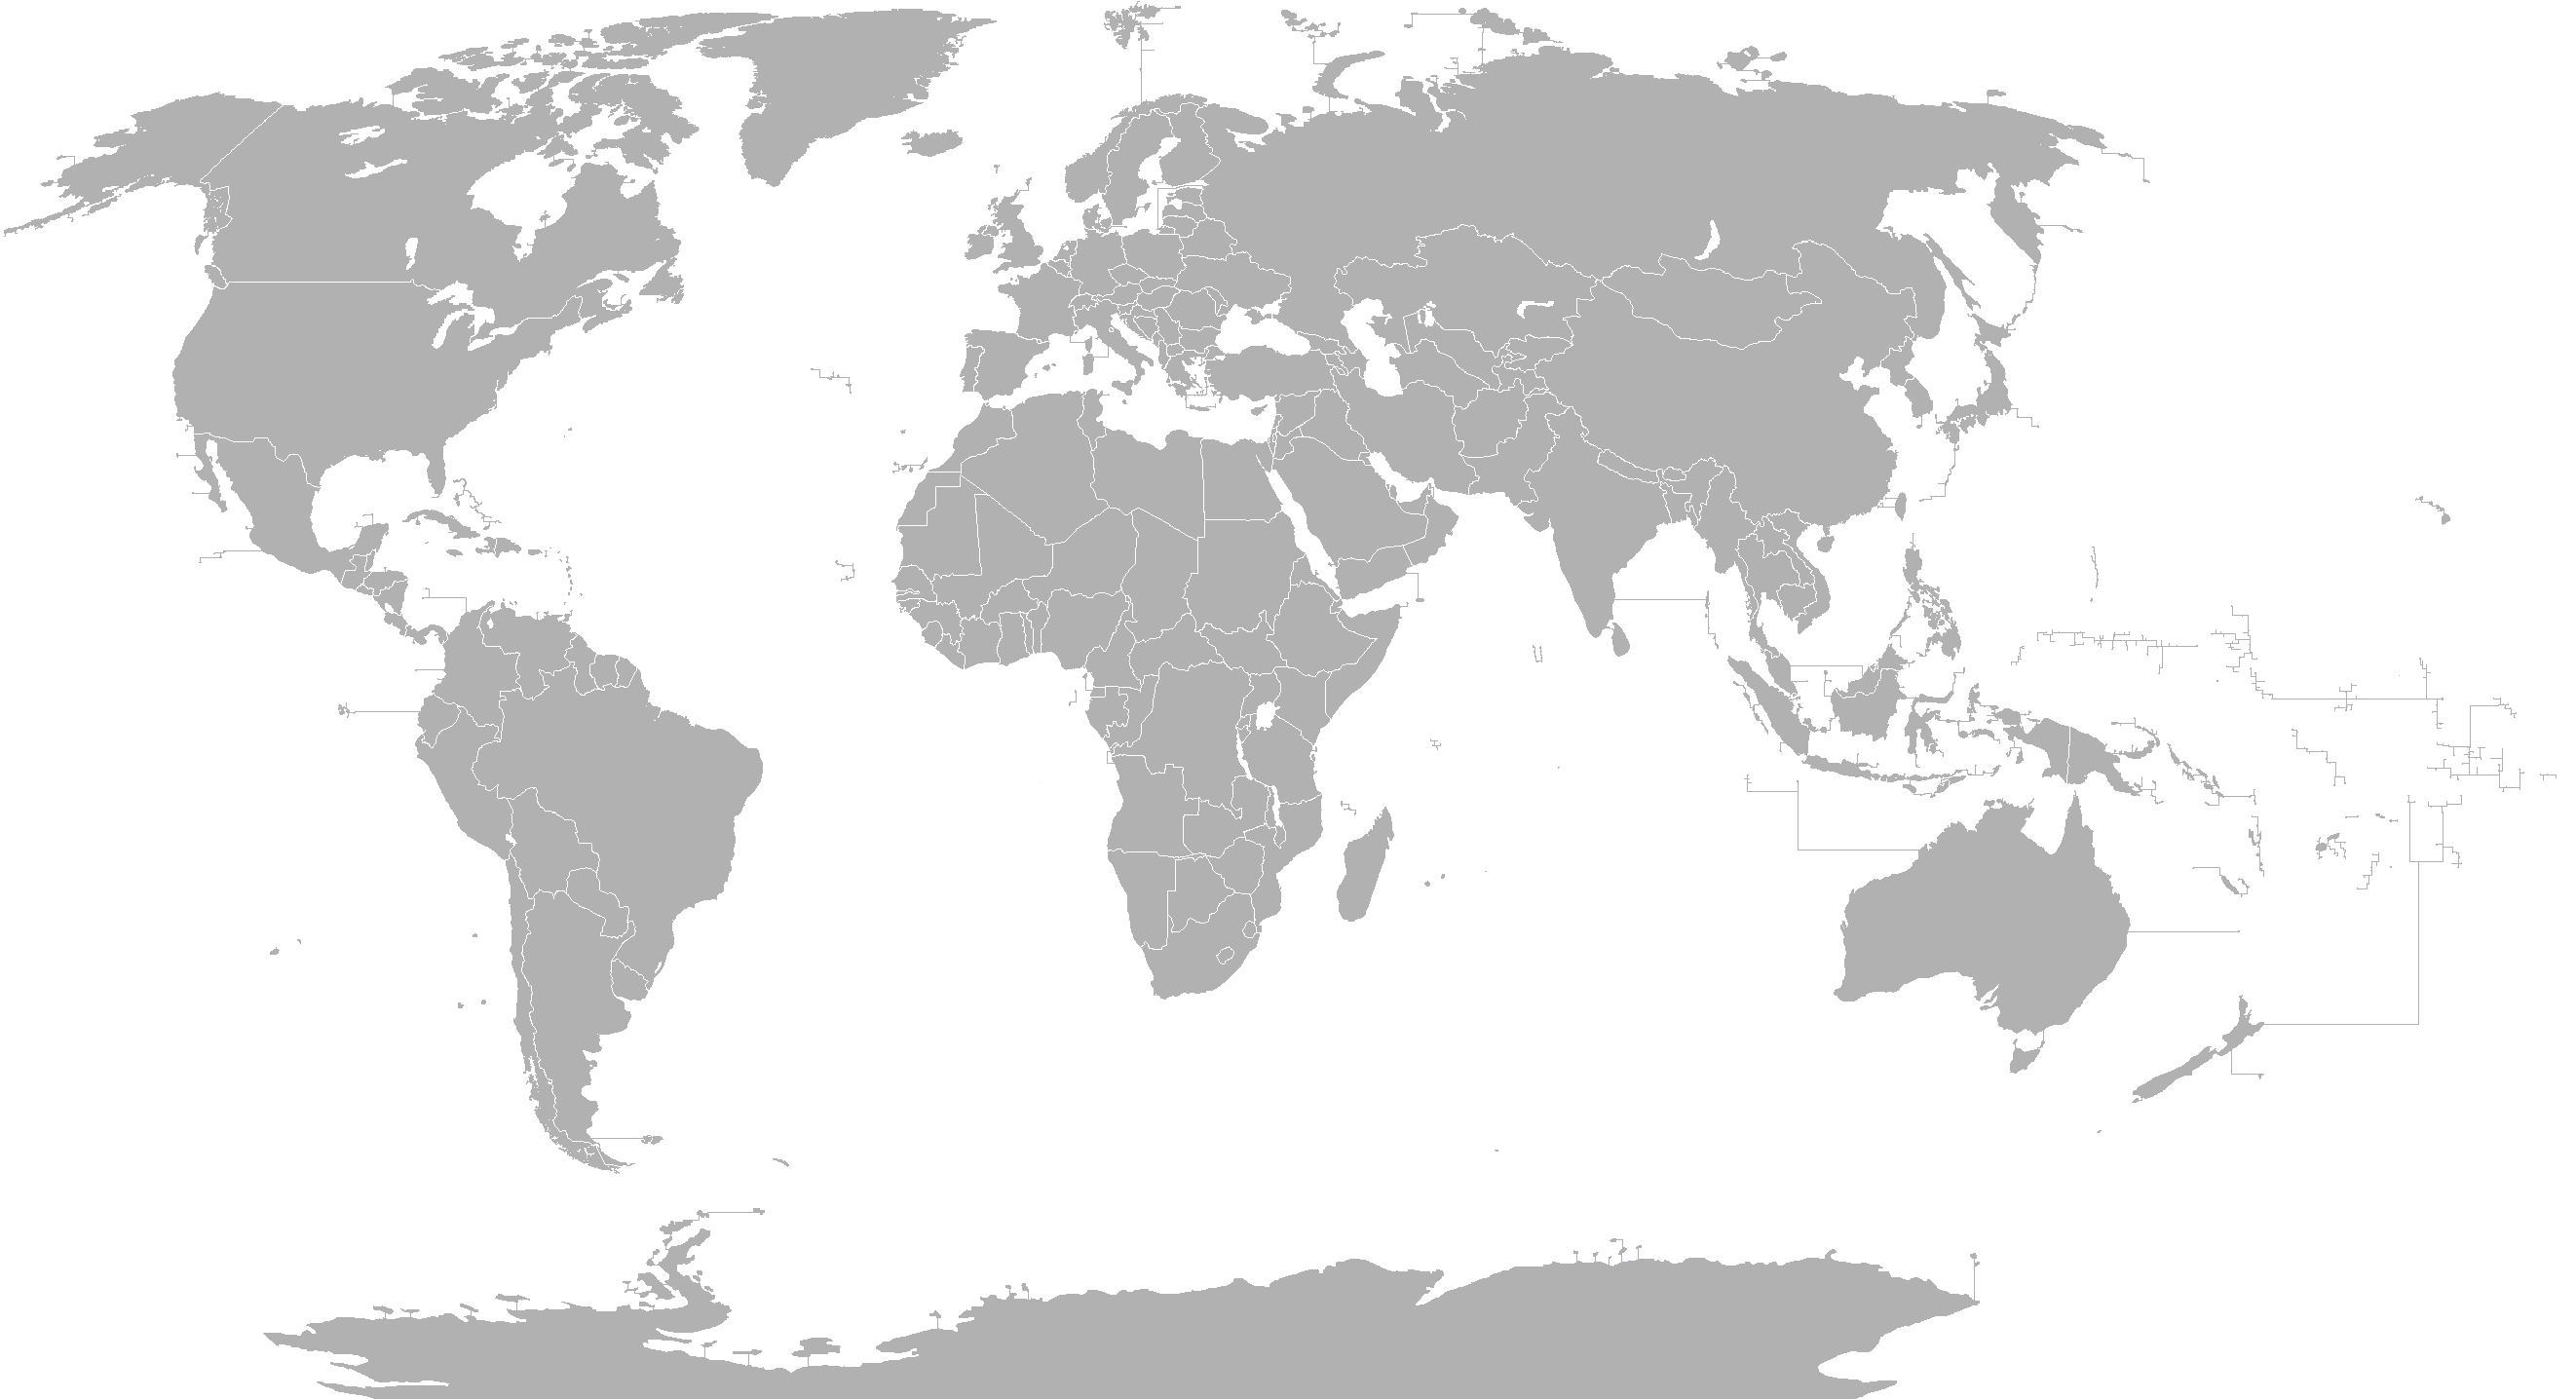 File:Mapa mundi blanco.PNG - Wikimedia Commons